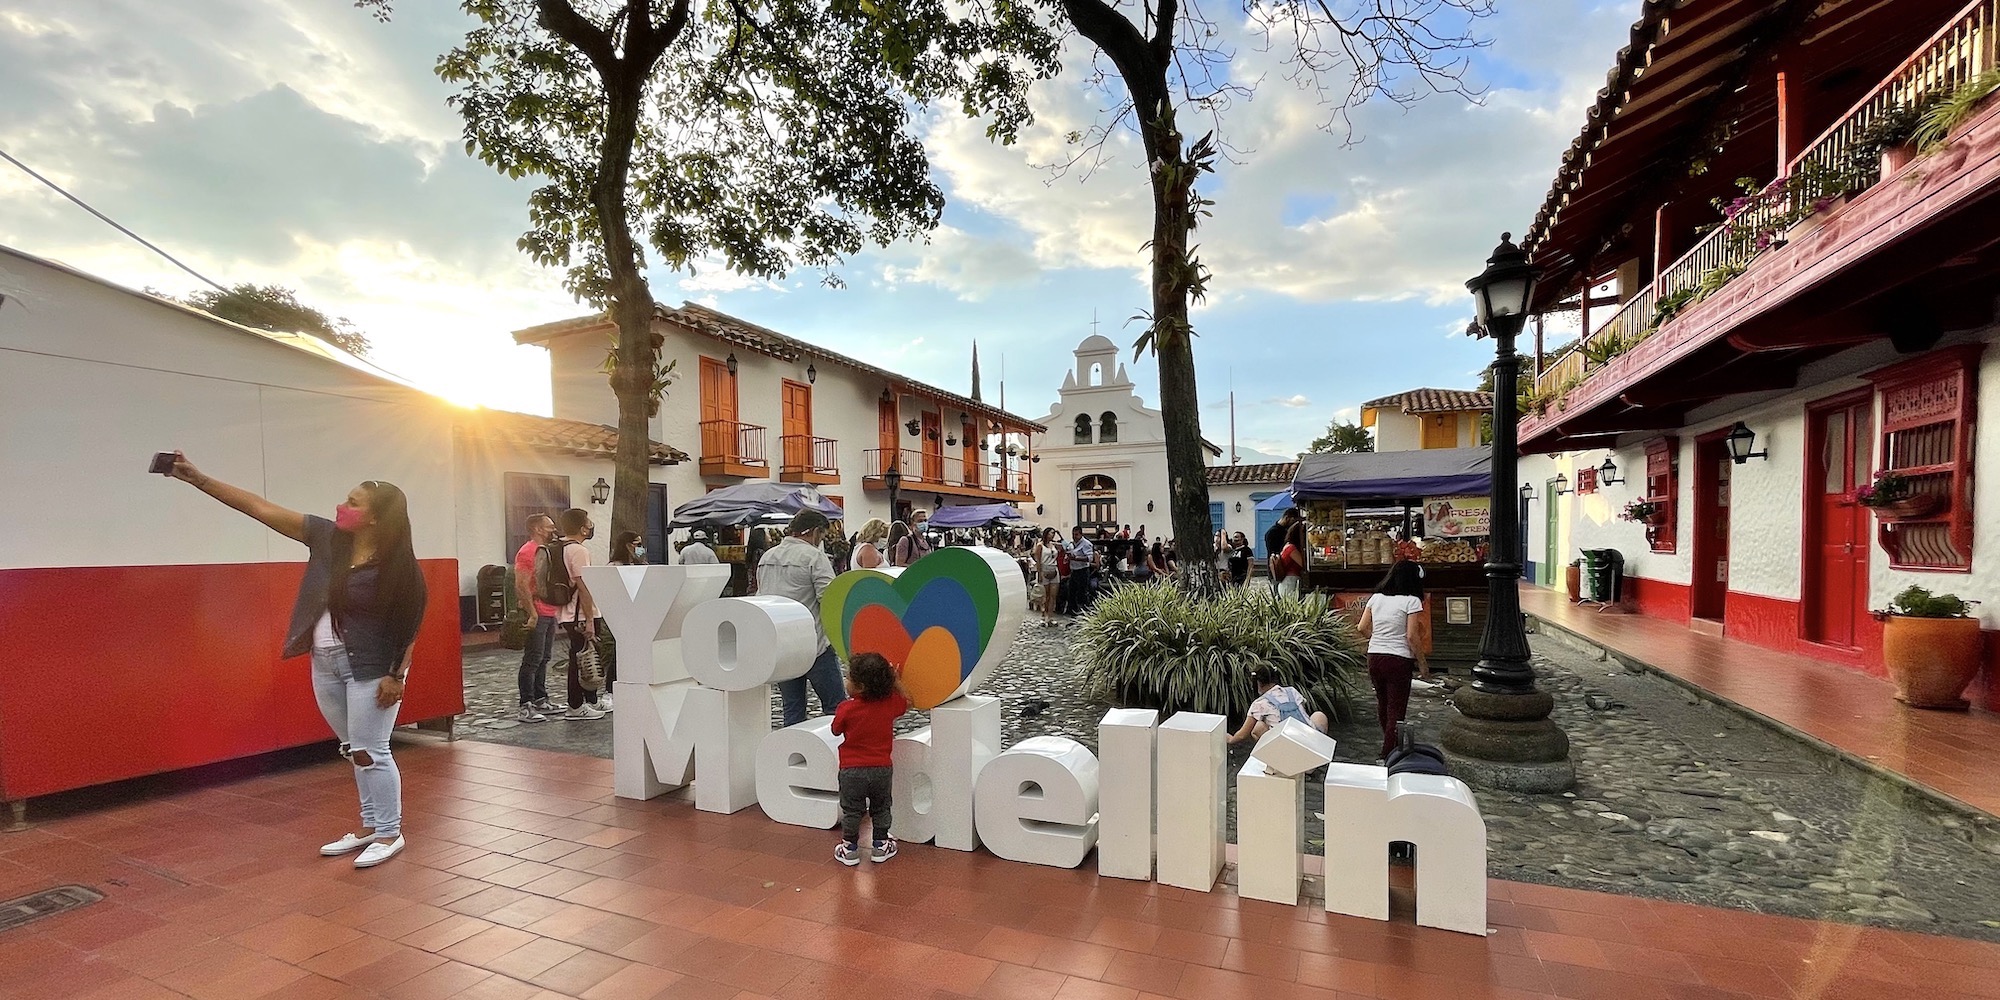 Medellin ist eine beliebte Stadt für Auswanderer